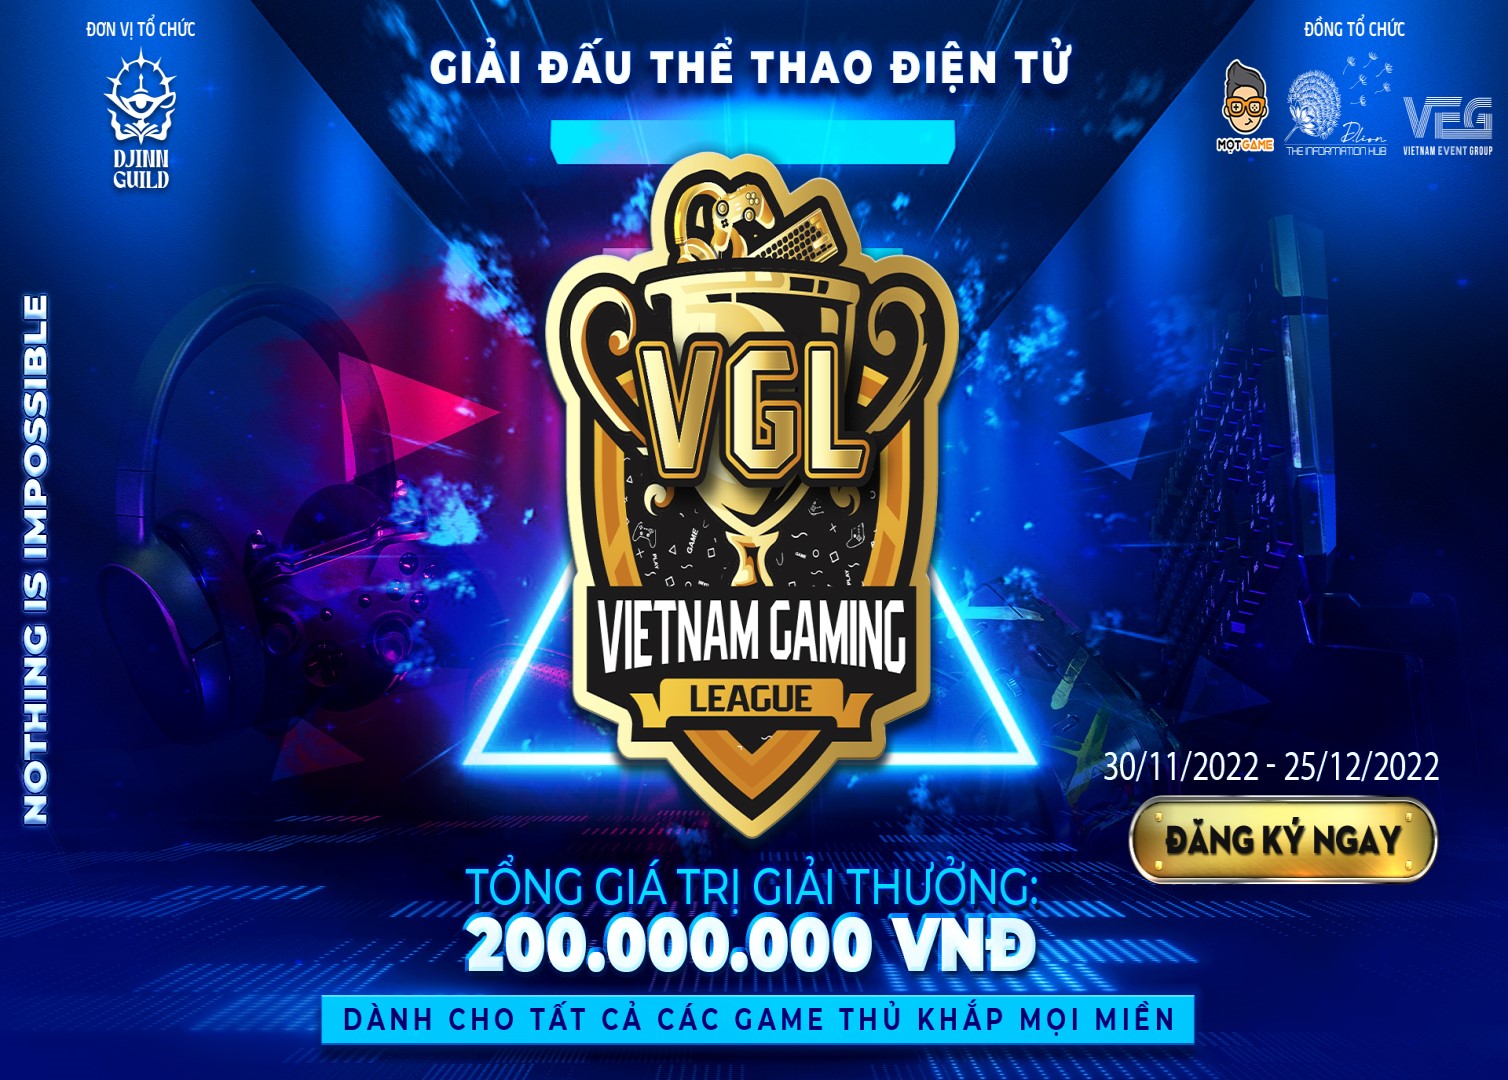 Các đội tuyển tham gia VGL – Valorant Community Tournament, họ là ai?